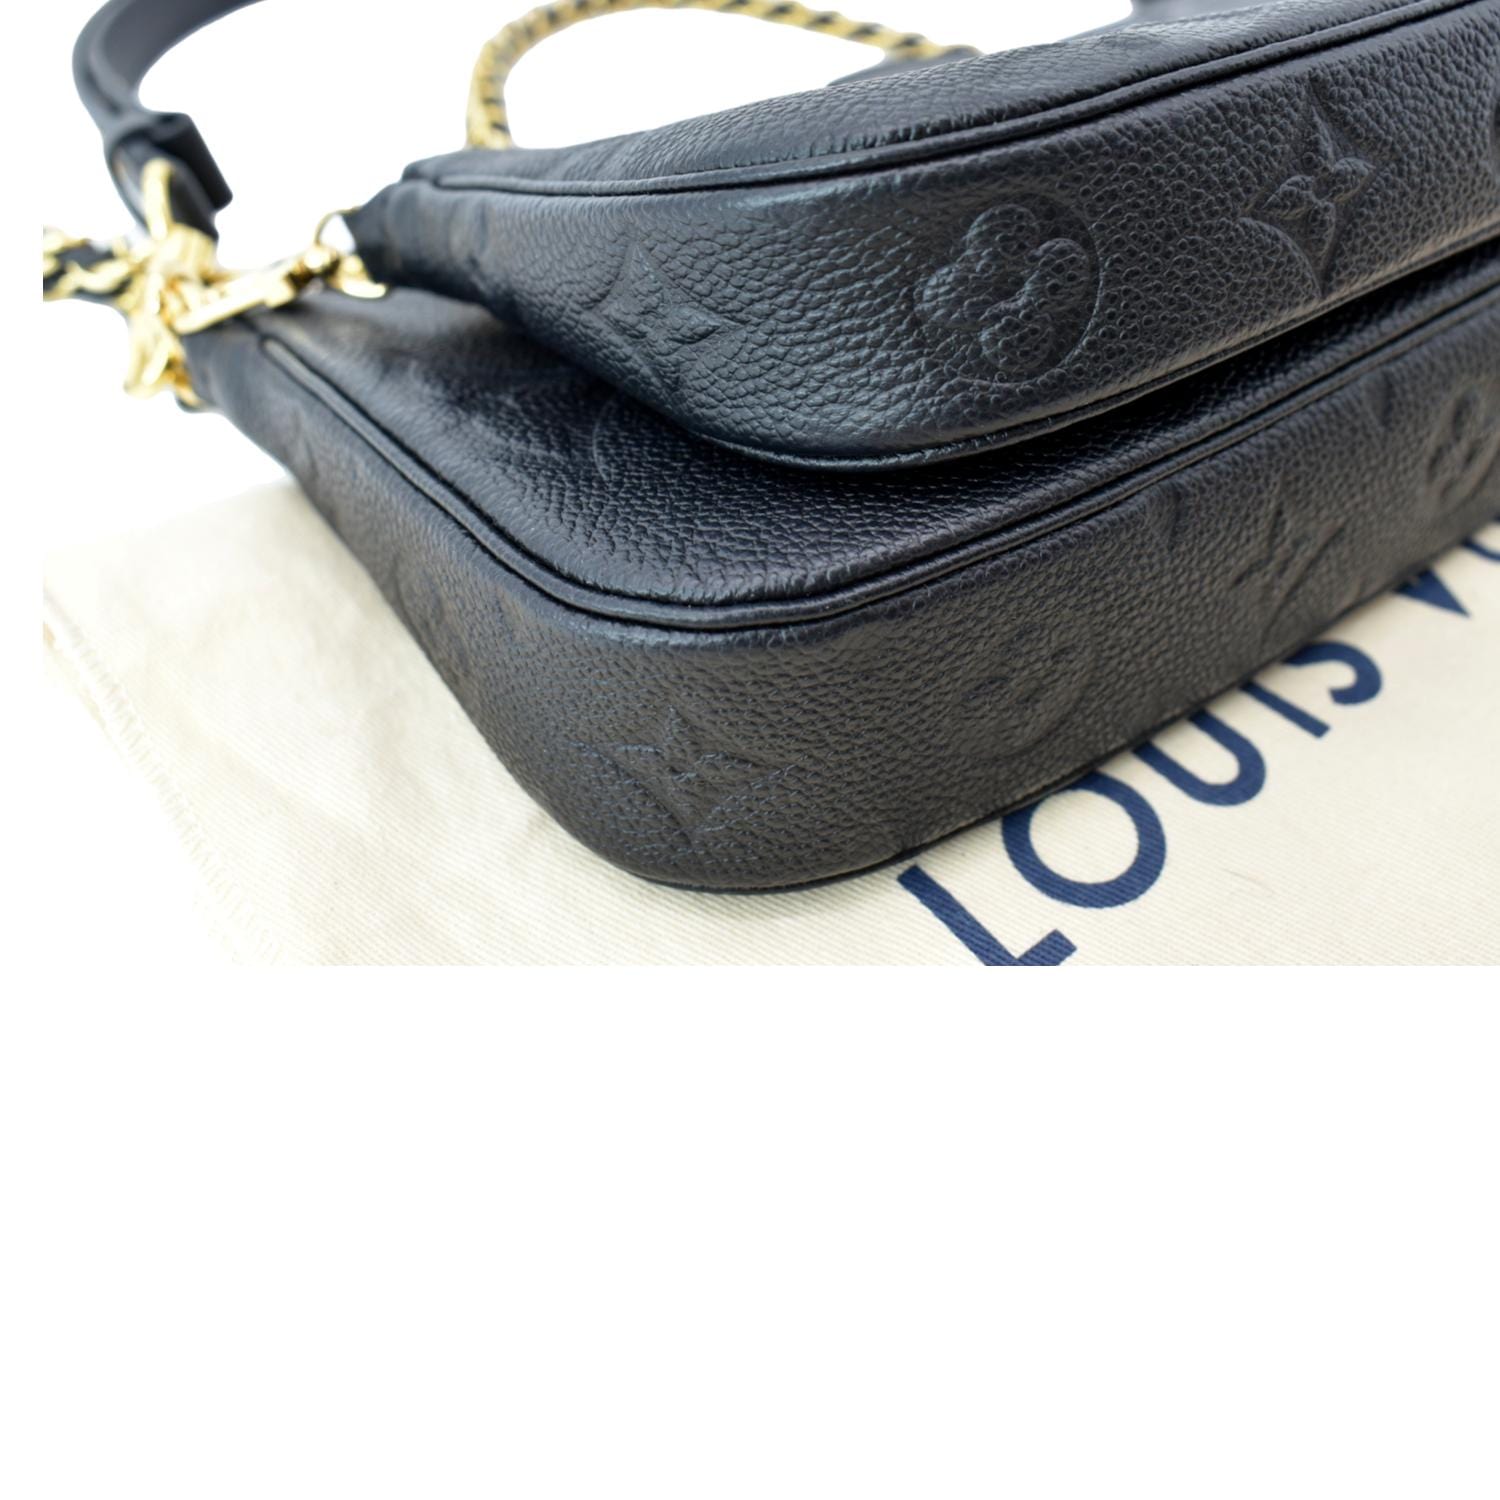 Louis Vuitton multi pochette bag blue strap handbags shoulder